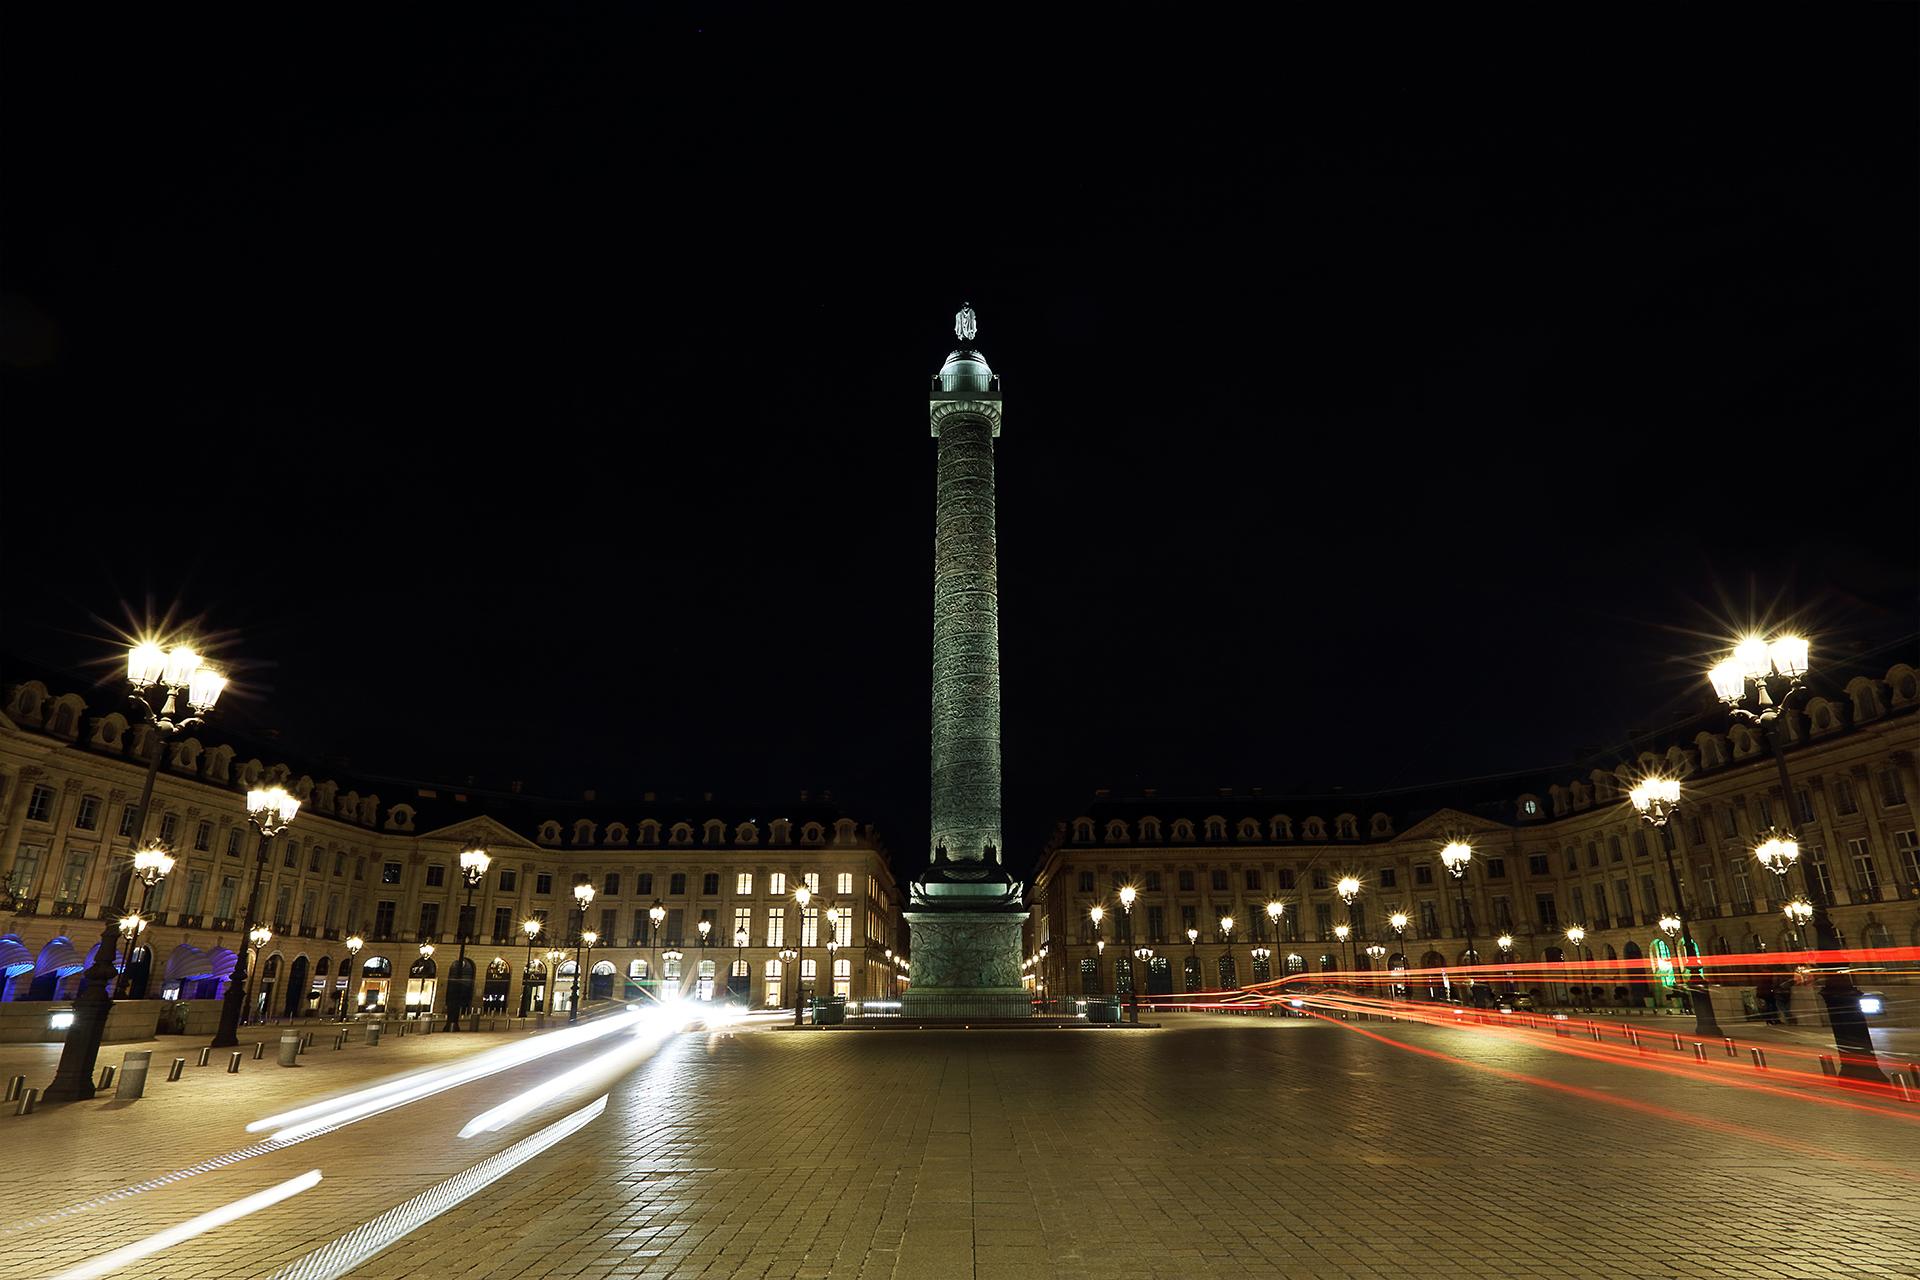 Grâce à la solution Comatelec Schréder, la ville de Paris s’est dotée d’un système d’éclairage écologique qui crée un espace nocturne confortable en adéquation avec son surnom de ville Lumière.